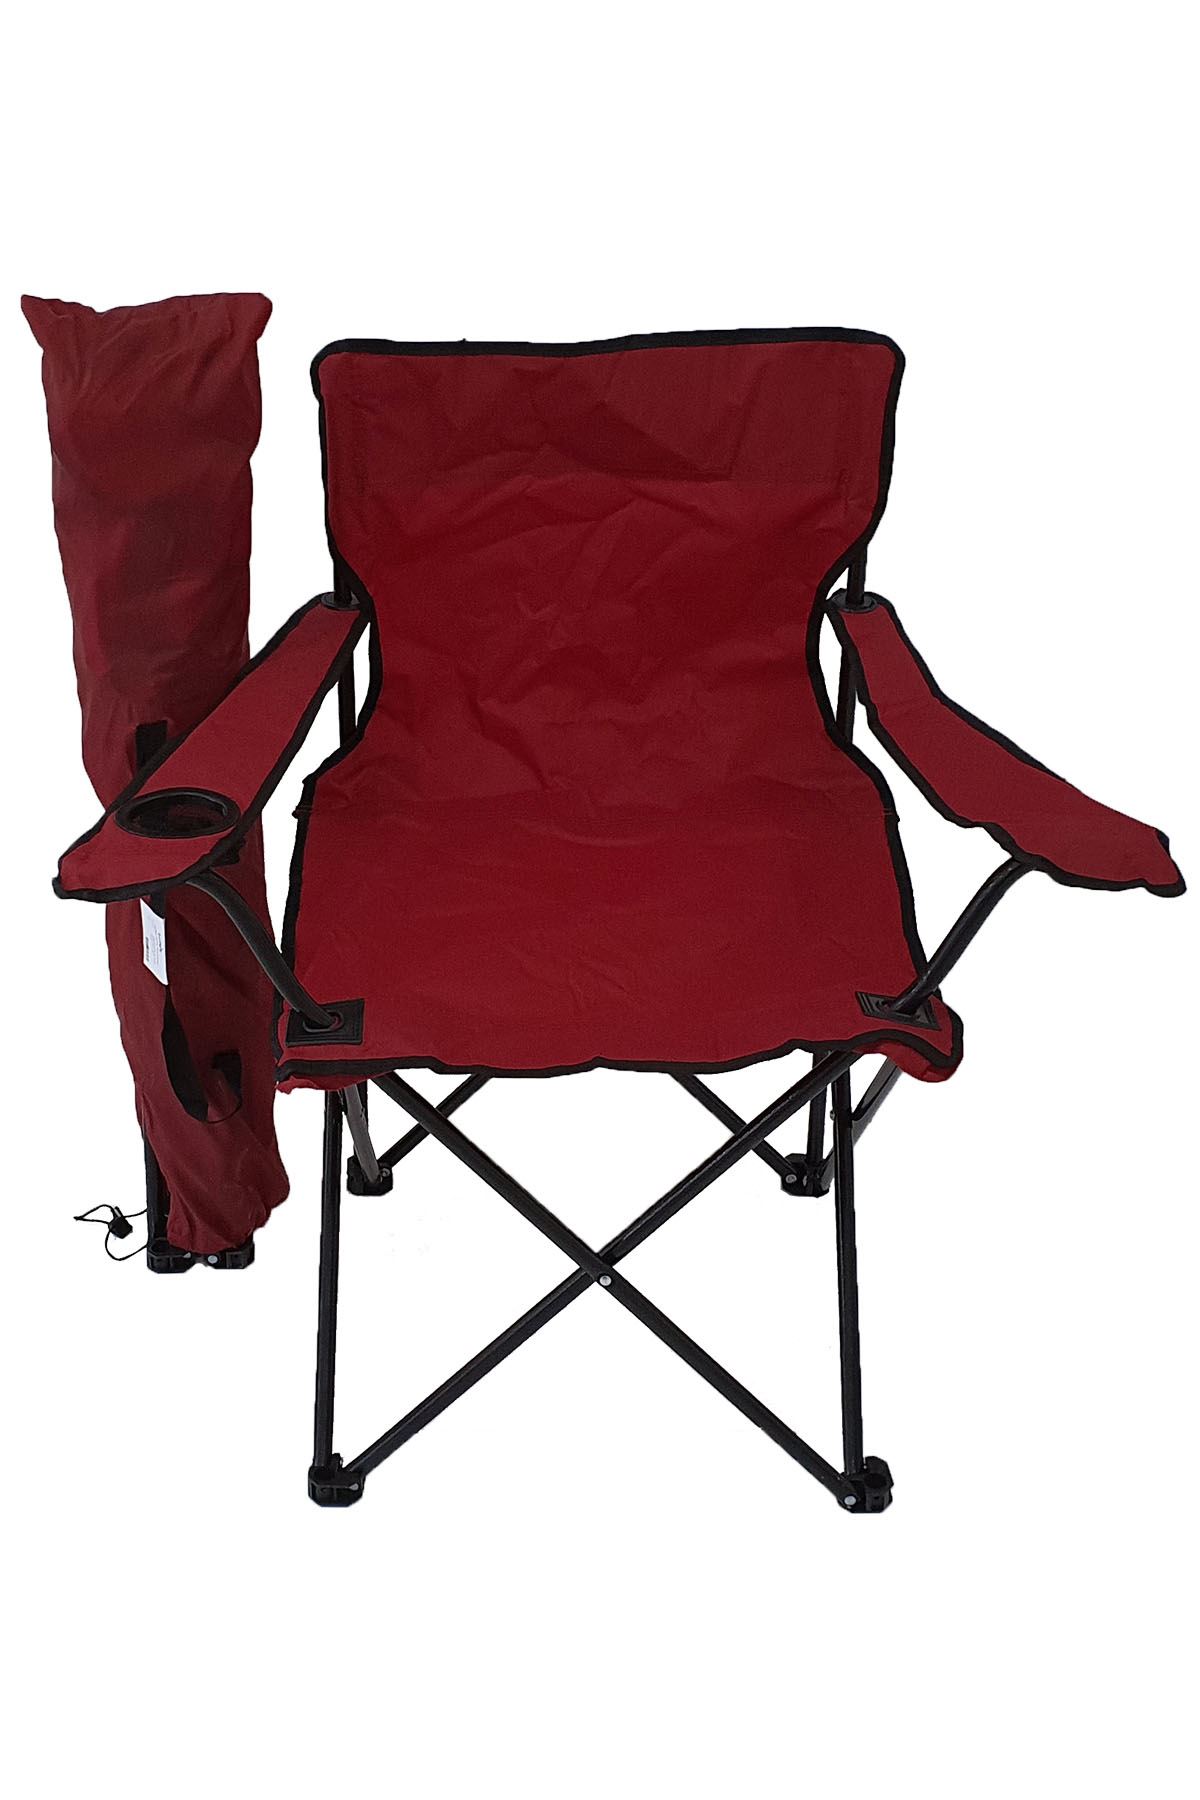 Bofigo Kamp Sandalyesi Piknik Sandalyesi Katlanır Sandalye Taşıma Çantalı Kamp Sandalyesi Kırmızı